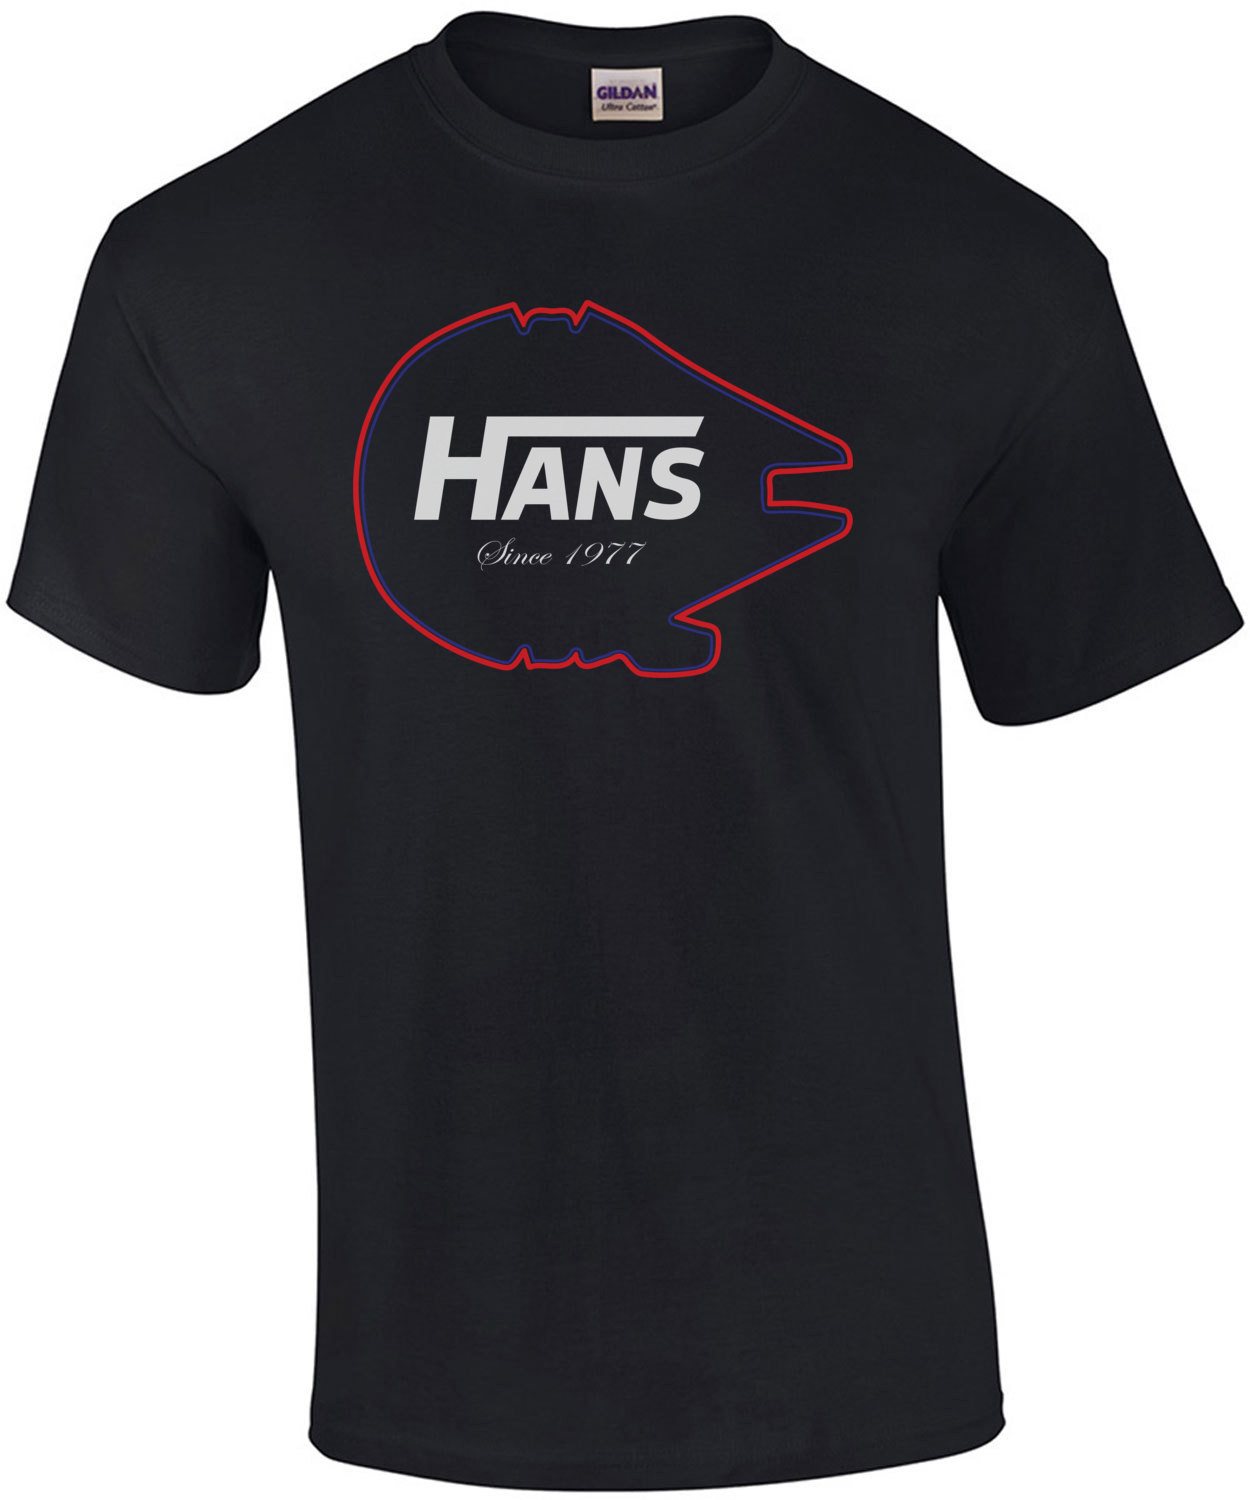 Hans T-Shirt - Vans - Han Solo T-Shirt